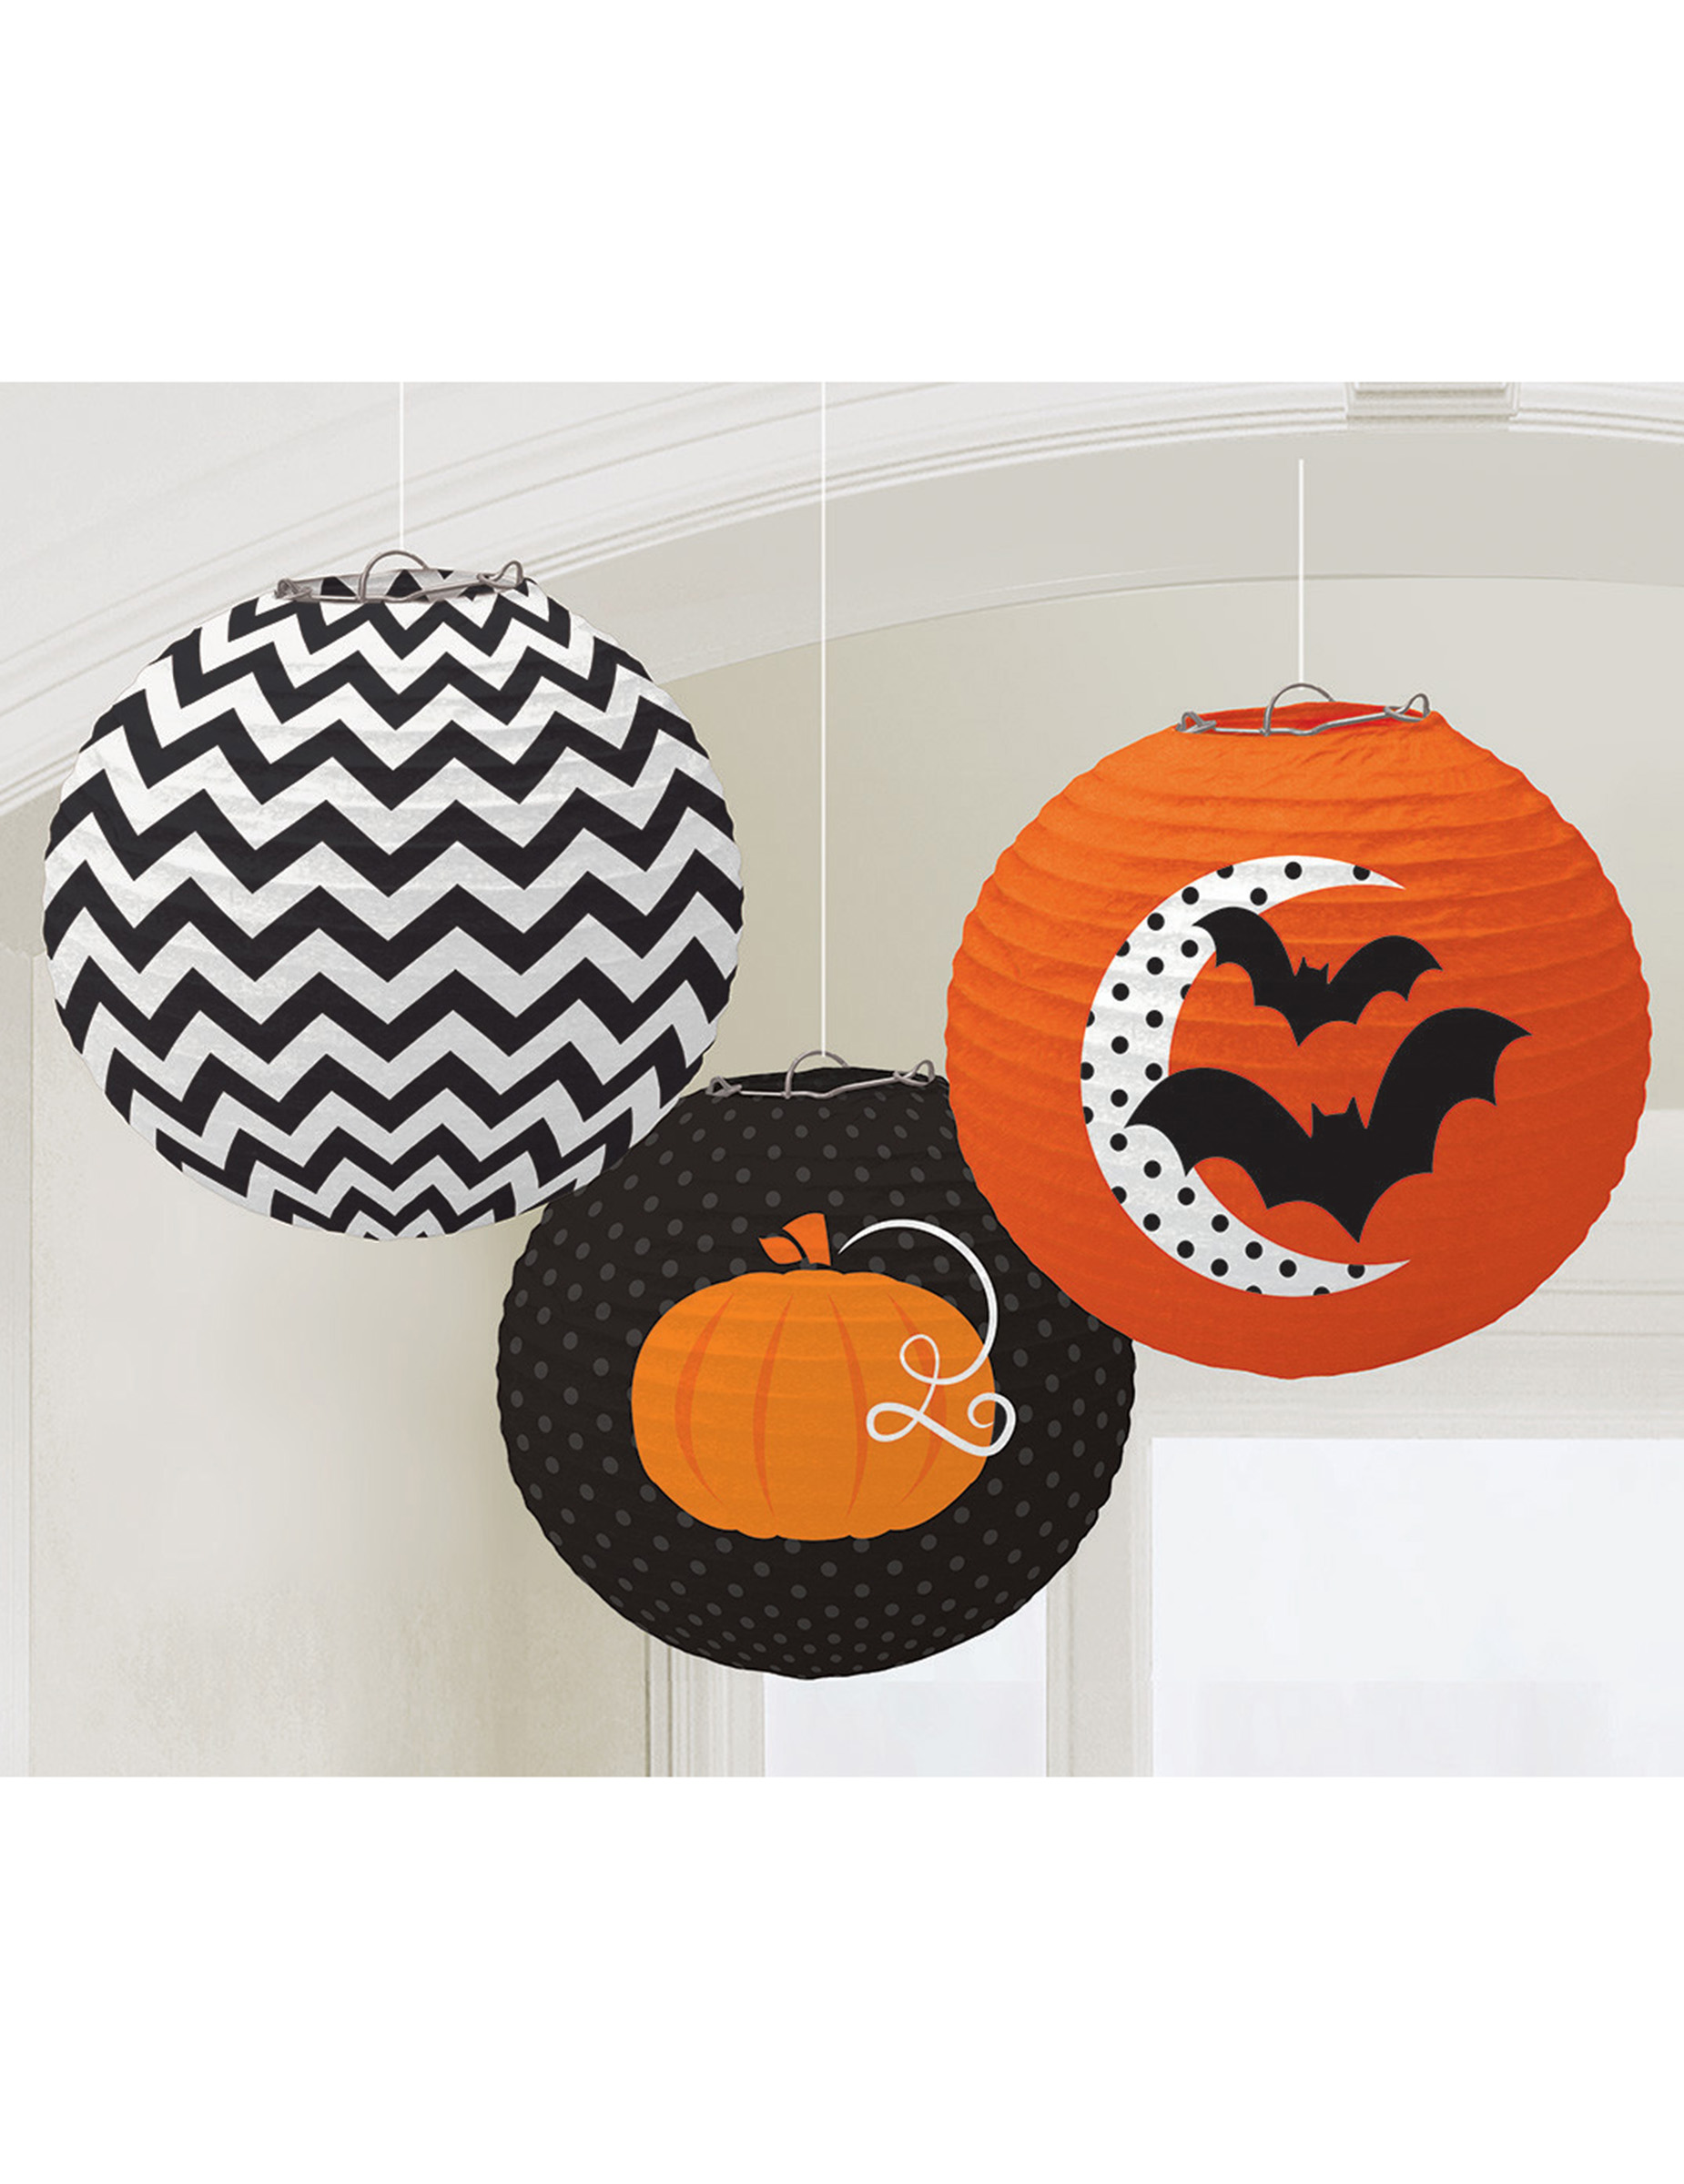 Süsse Lampions Halloween Partydeko-Set 3 Stück orange-schwarz-weiss 24cm